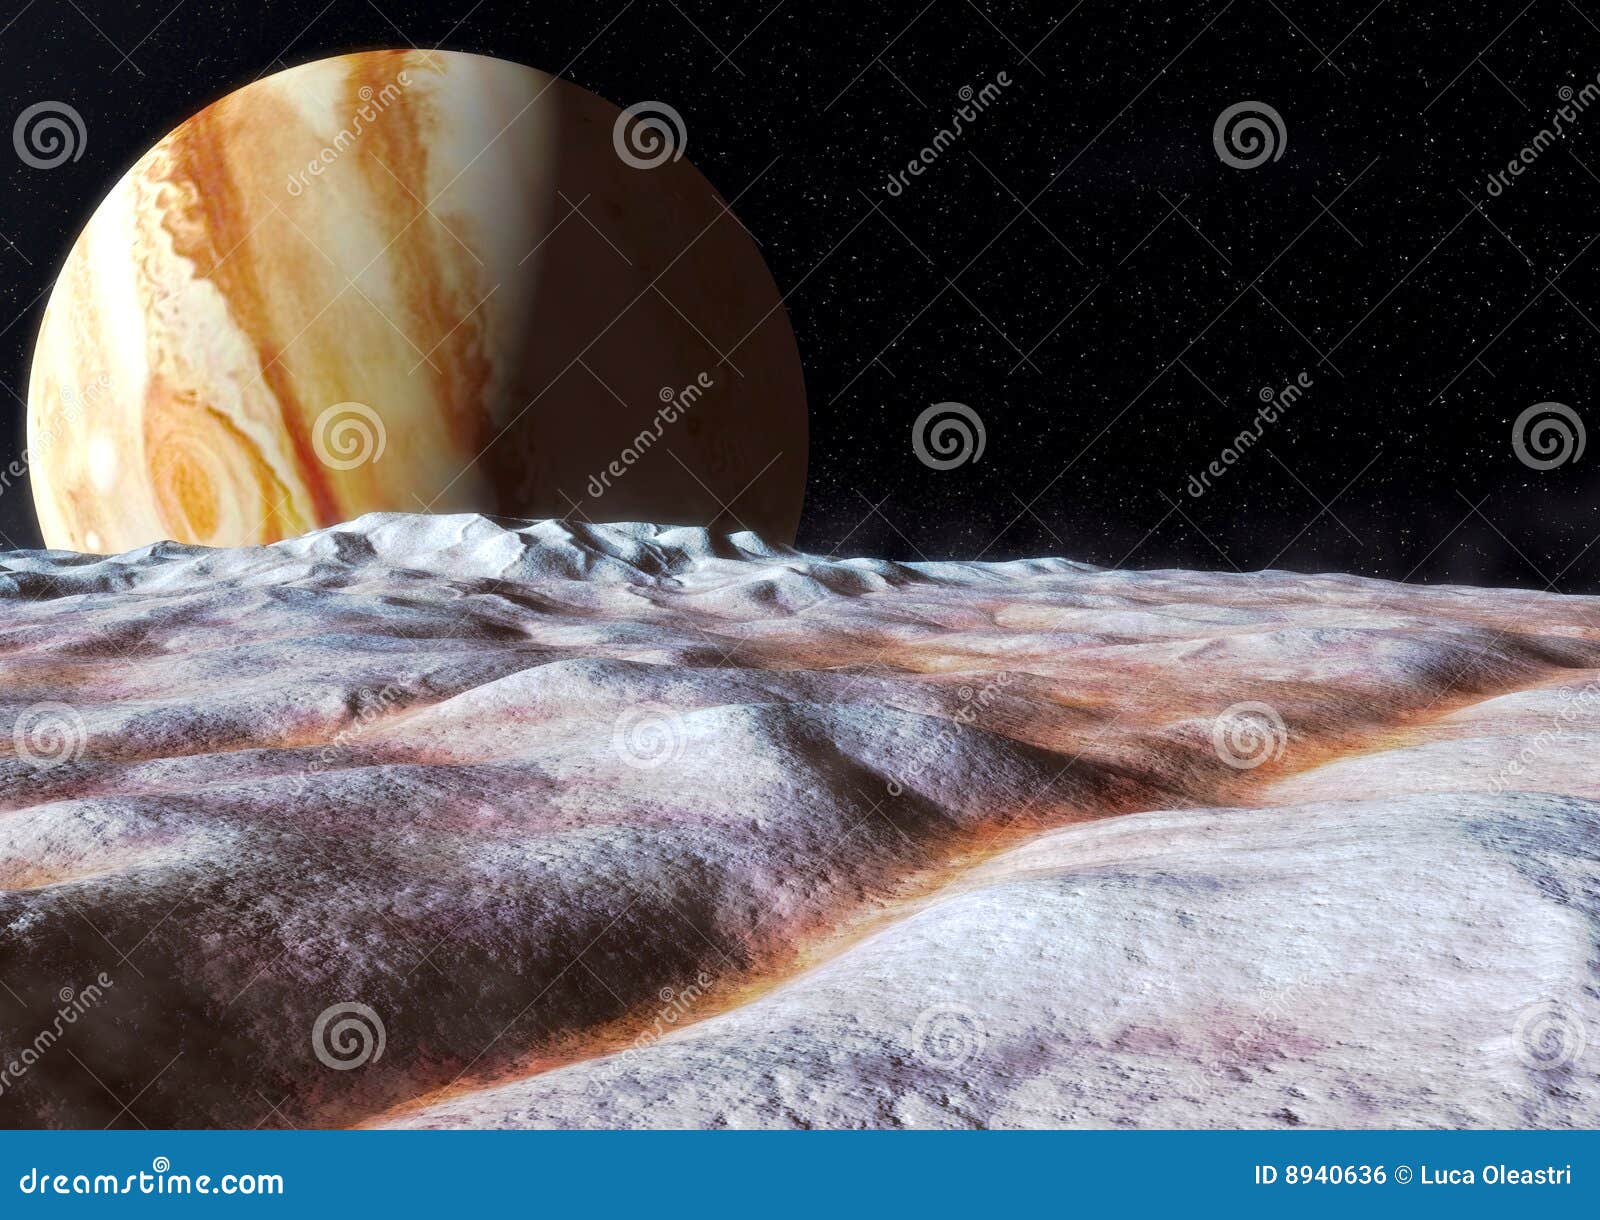 europa moon jupiter